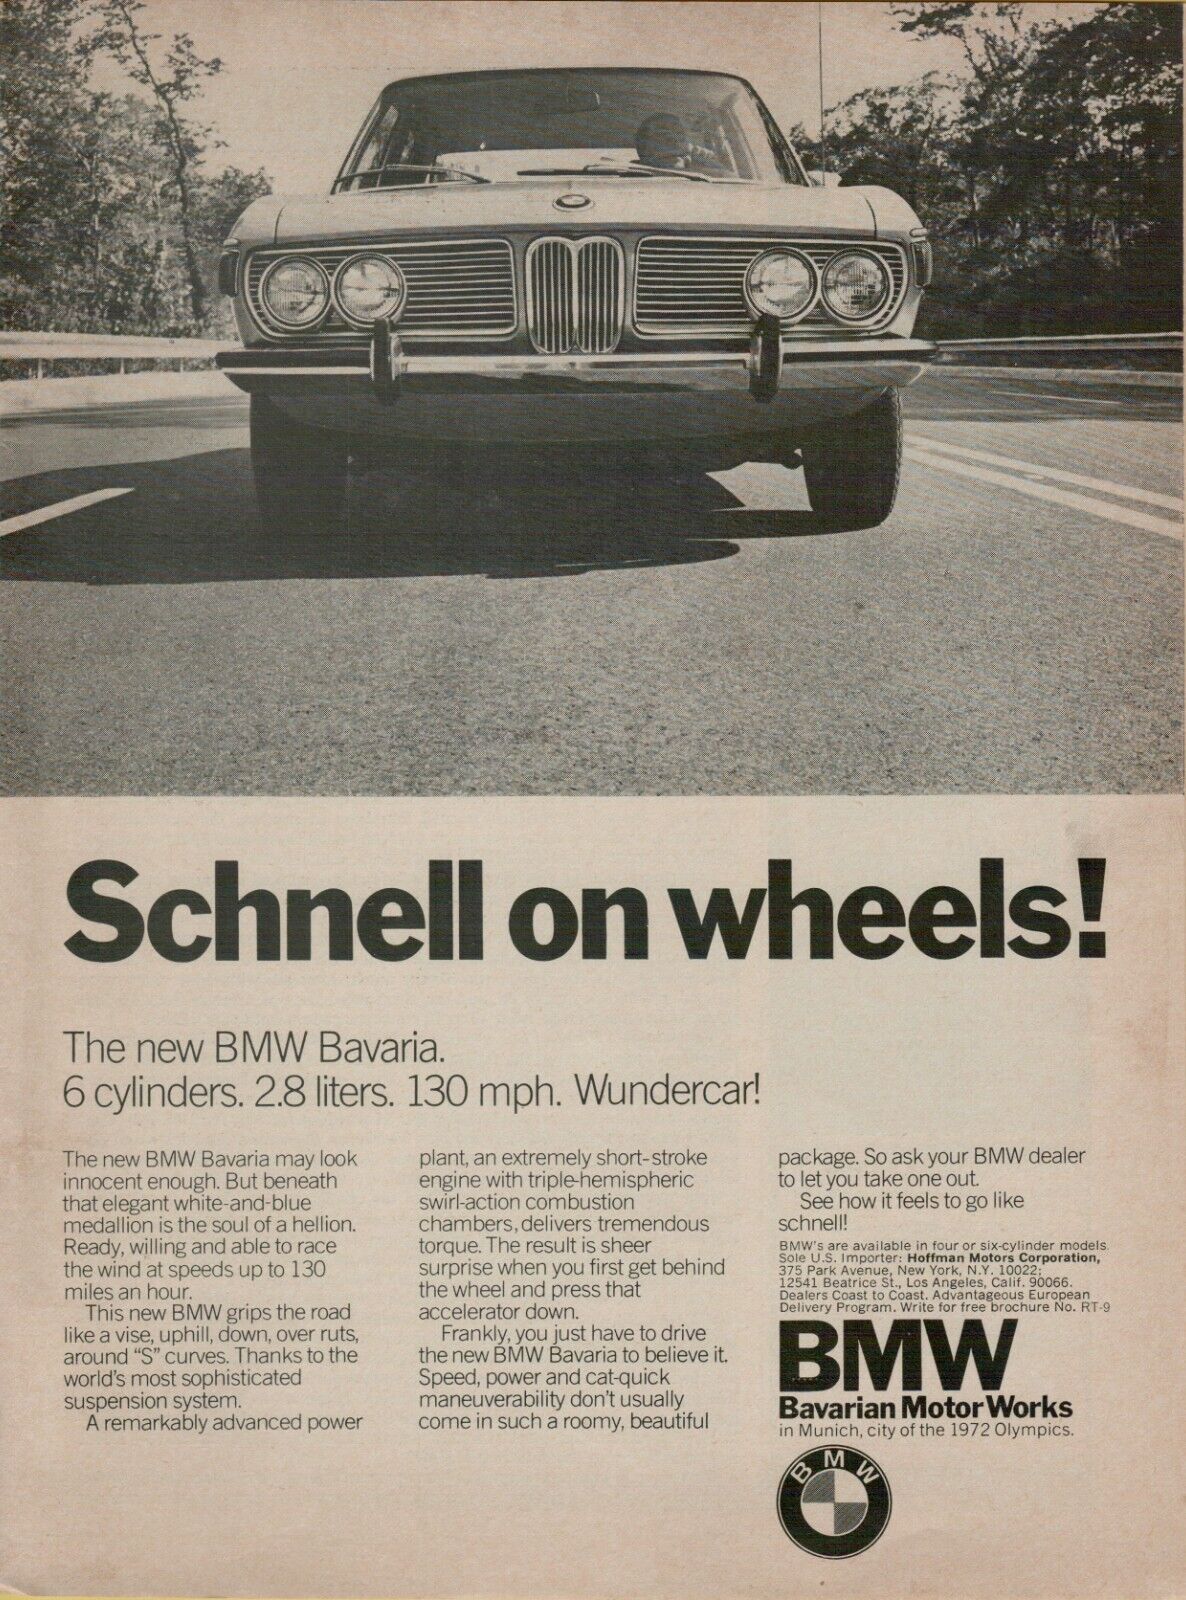 1971 BMW Bavaria 3.0 Liter 6-cylinder Schnell on Wheels Photo VINTAGE PRINT AD